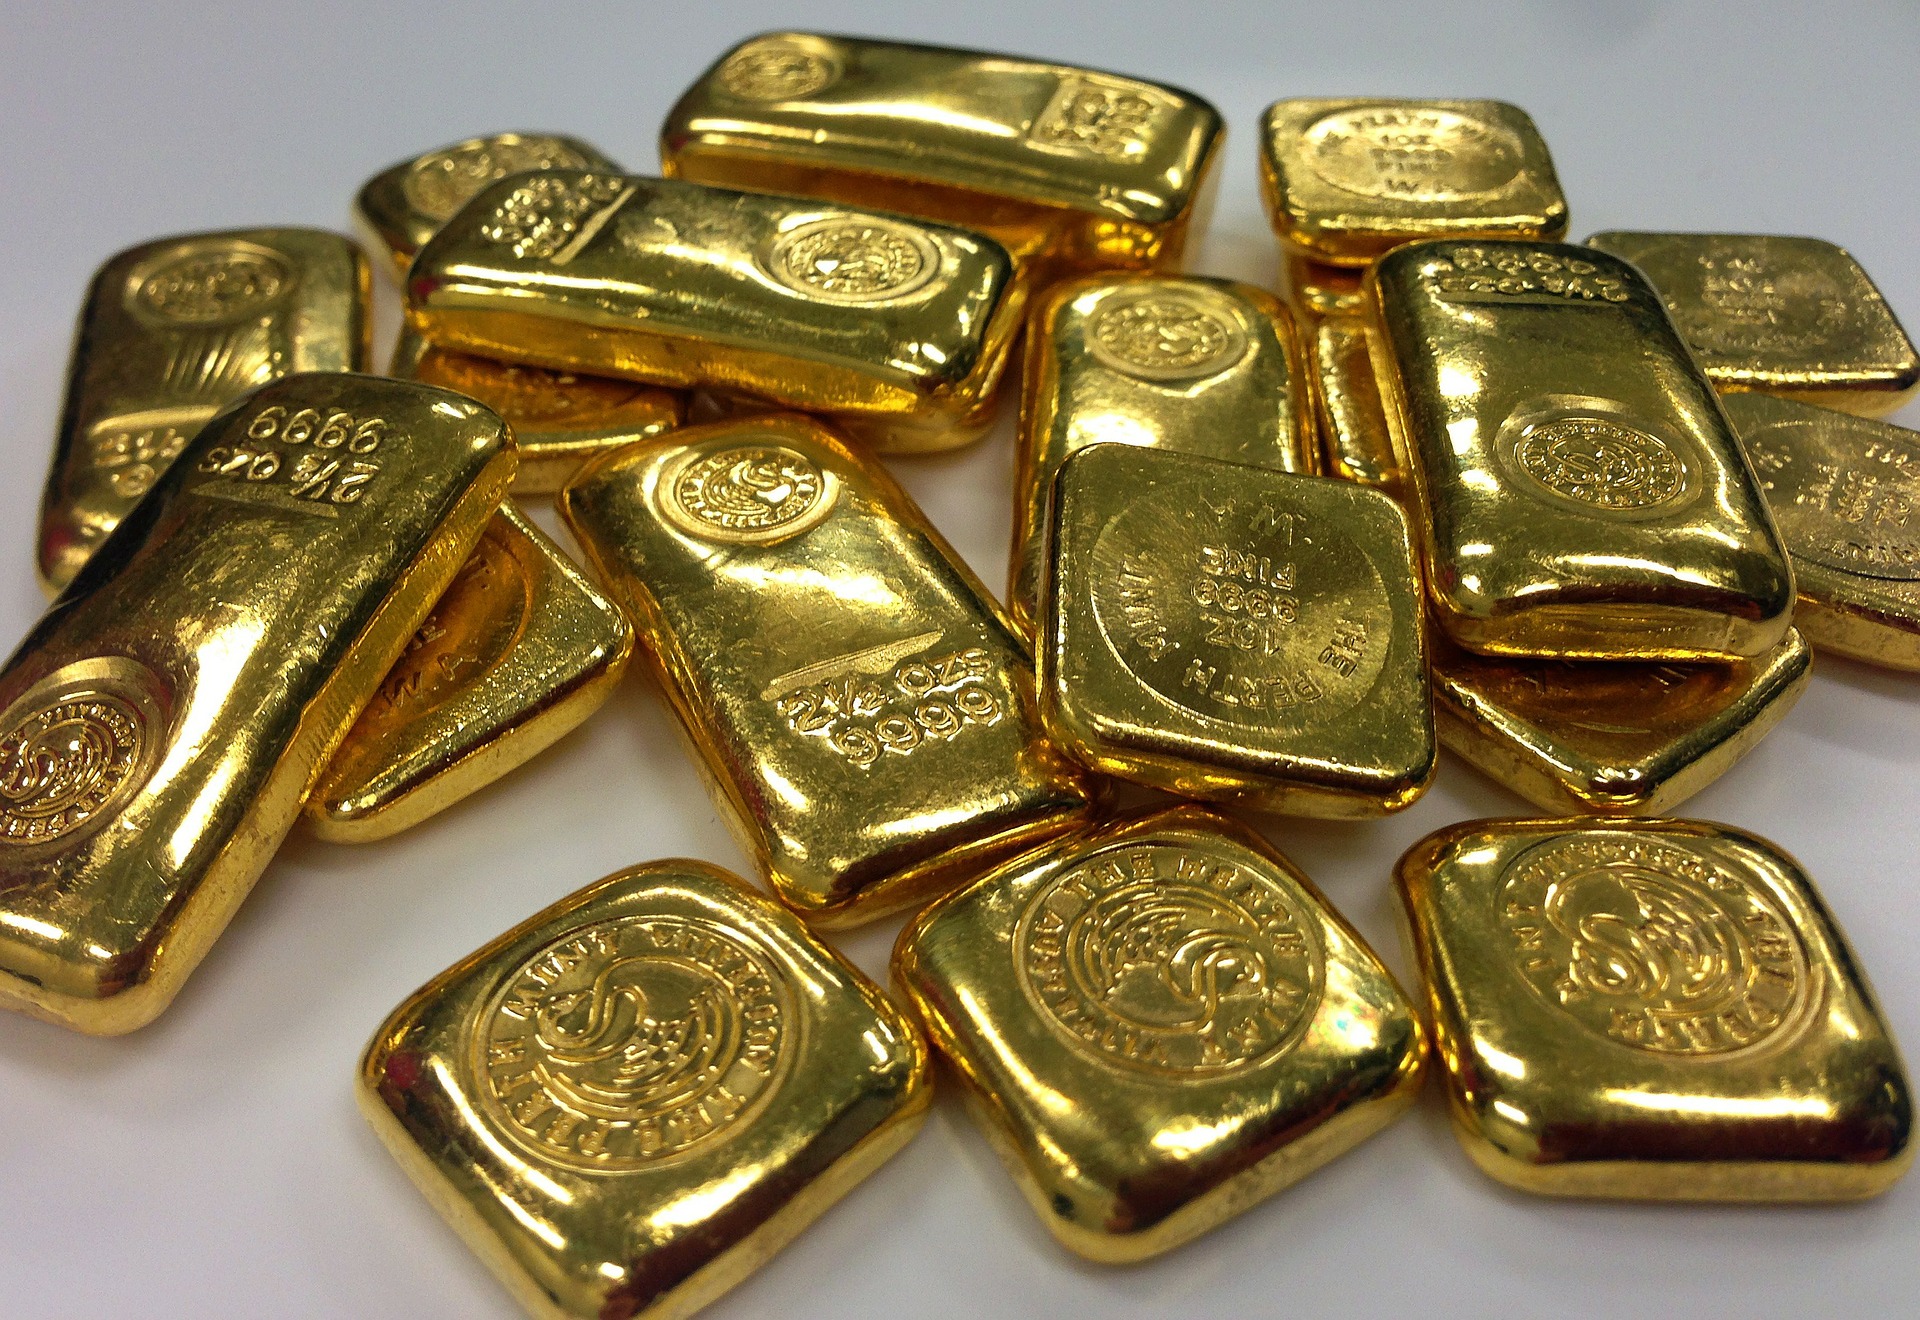 Cena zlata roste a nakoupit zlato je dnes sázkou na jistotu